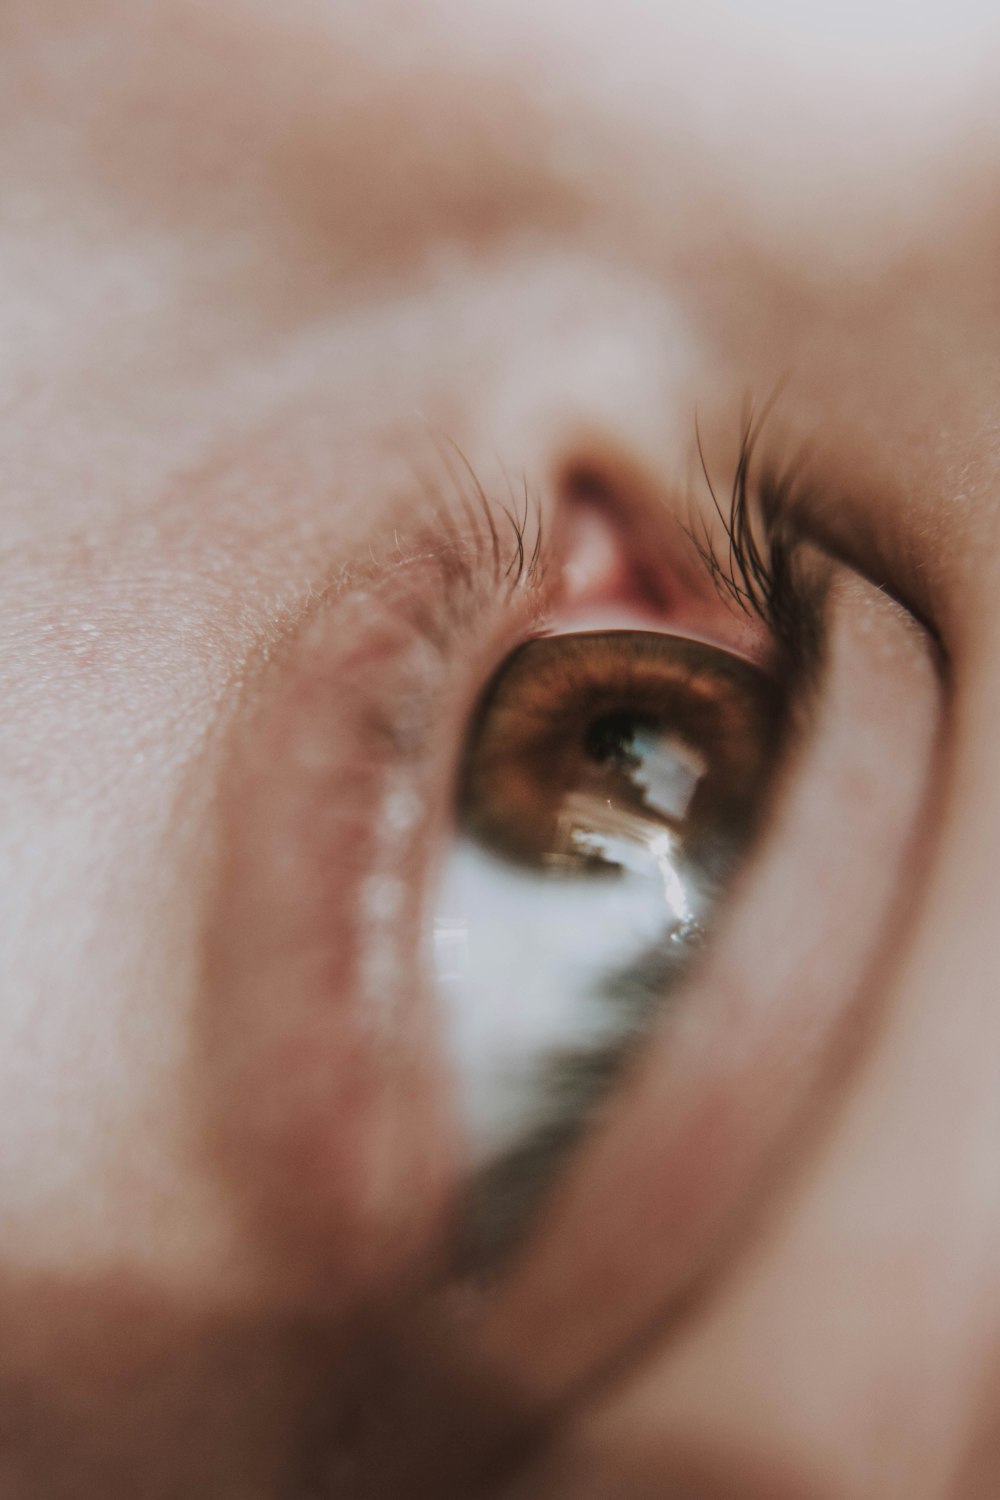 Foto de enfoque superficial del iris marrón de la persona